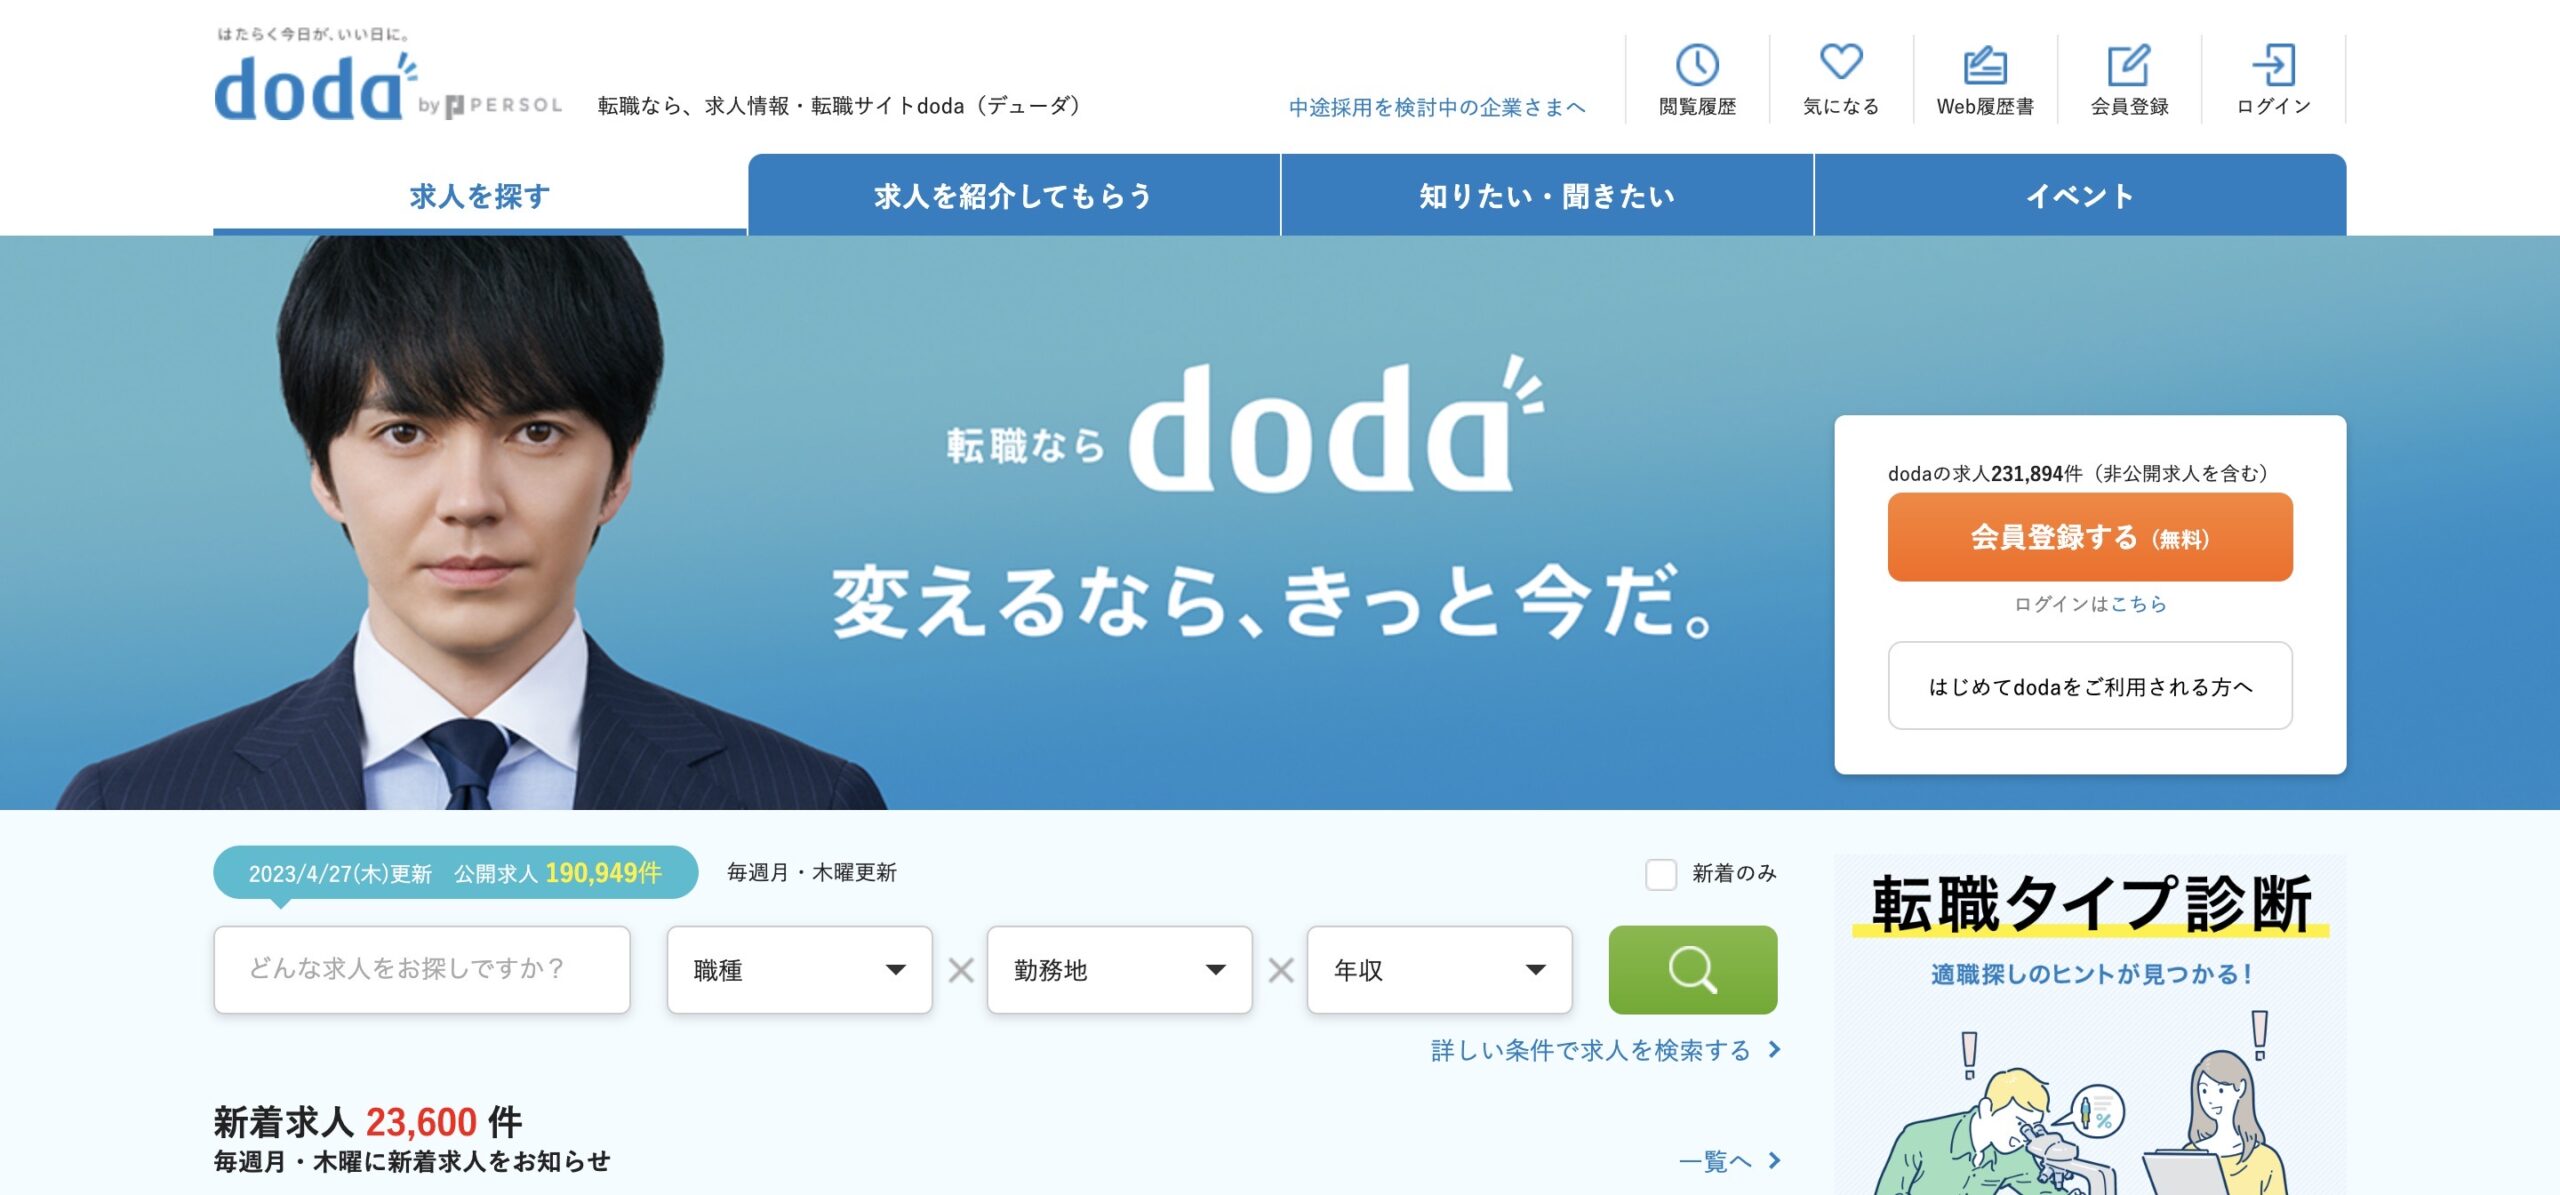 doda転職サイト公式